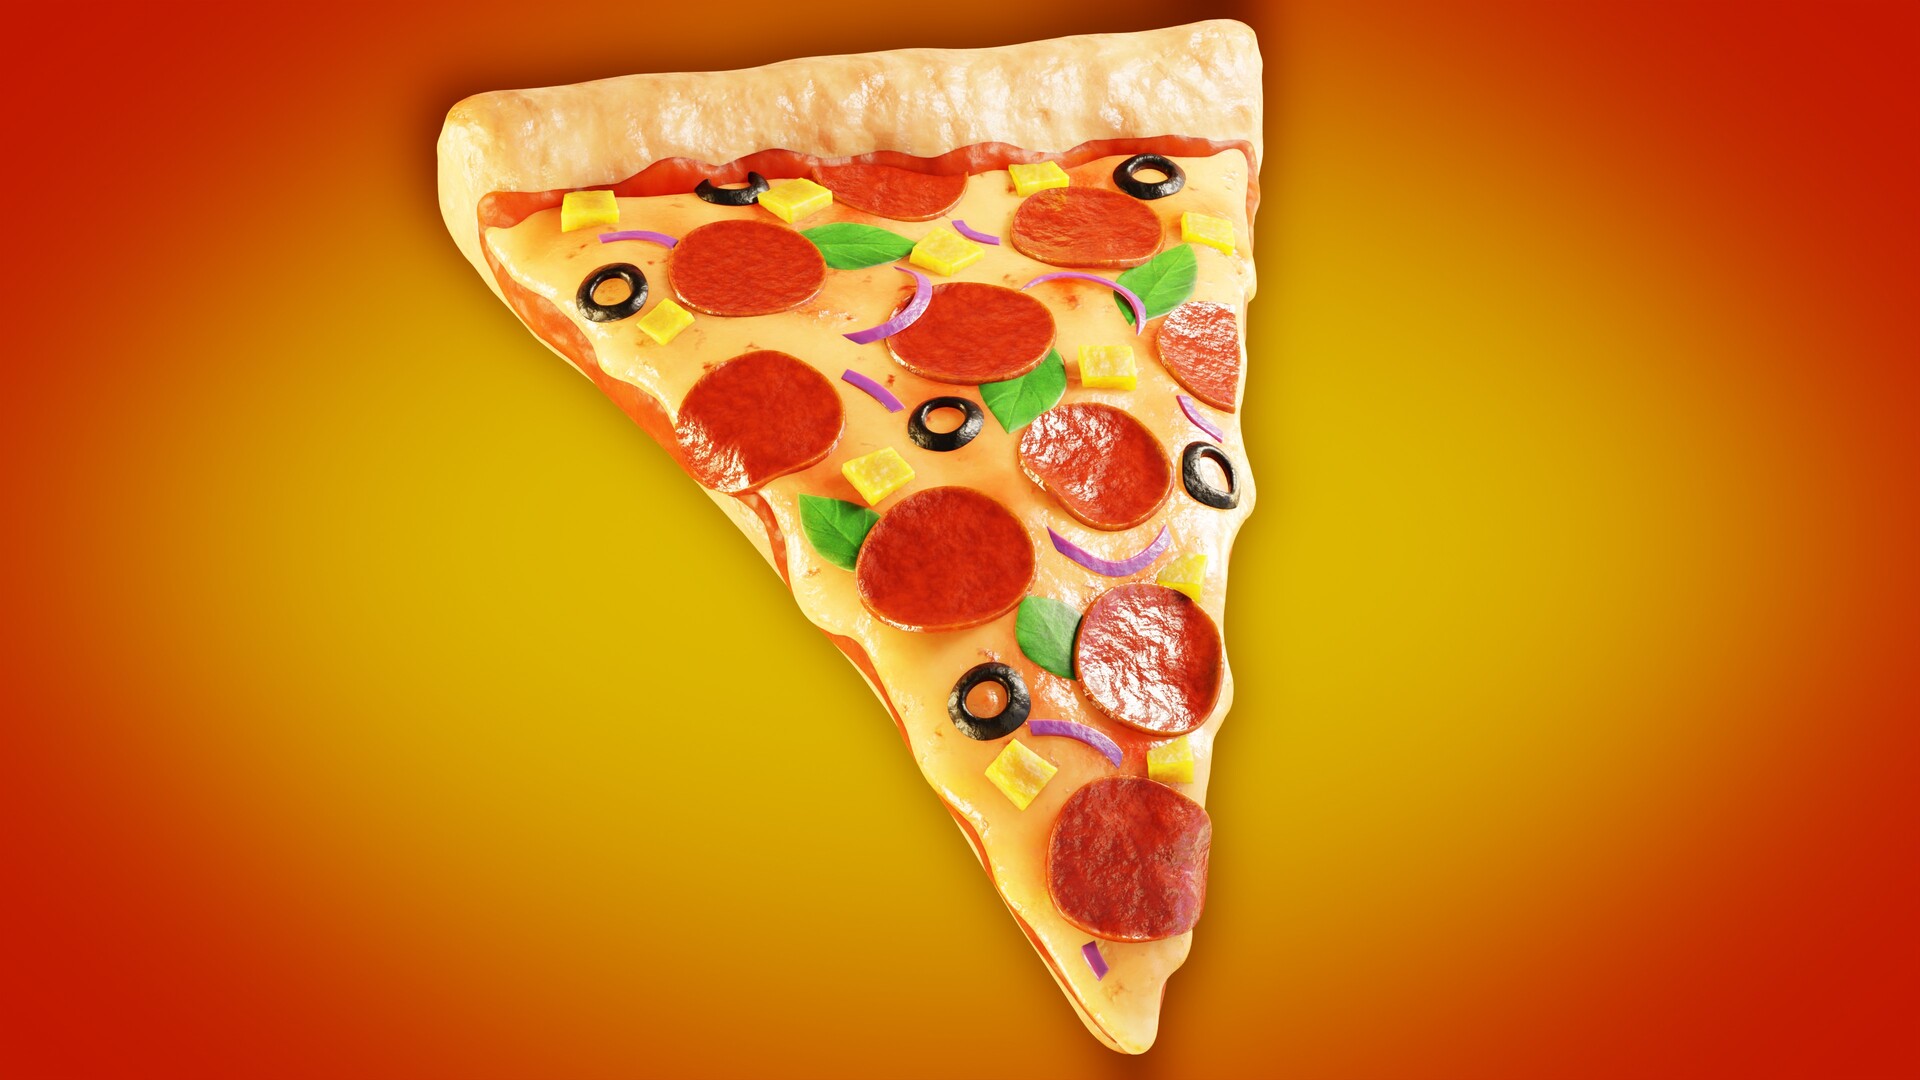 сколько калорий в одном куске пиццы гавайская фото 117